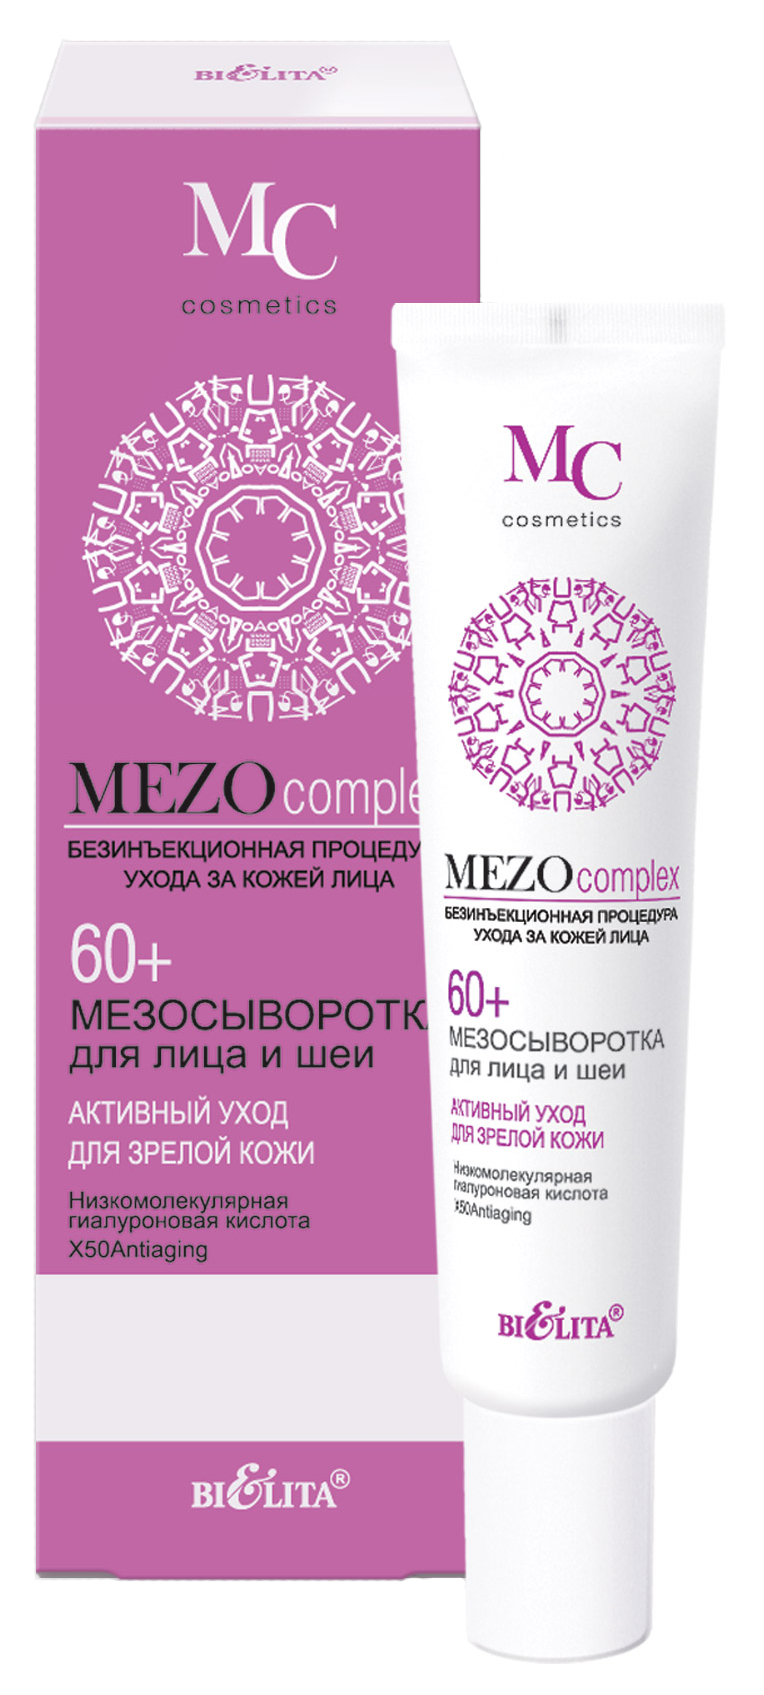 Сыворотка для лица Белита Mezocomplex Активный уход для зрелой кожи 60+ 20 мл белита мезокрем маска mezocomplex ночной для лица активный уход 60 50